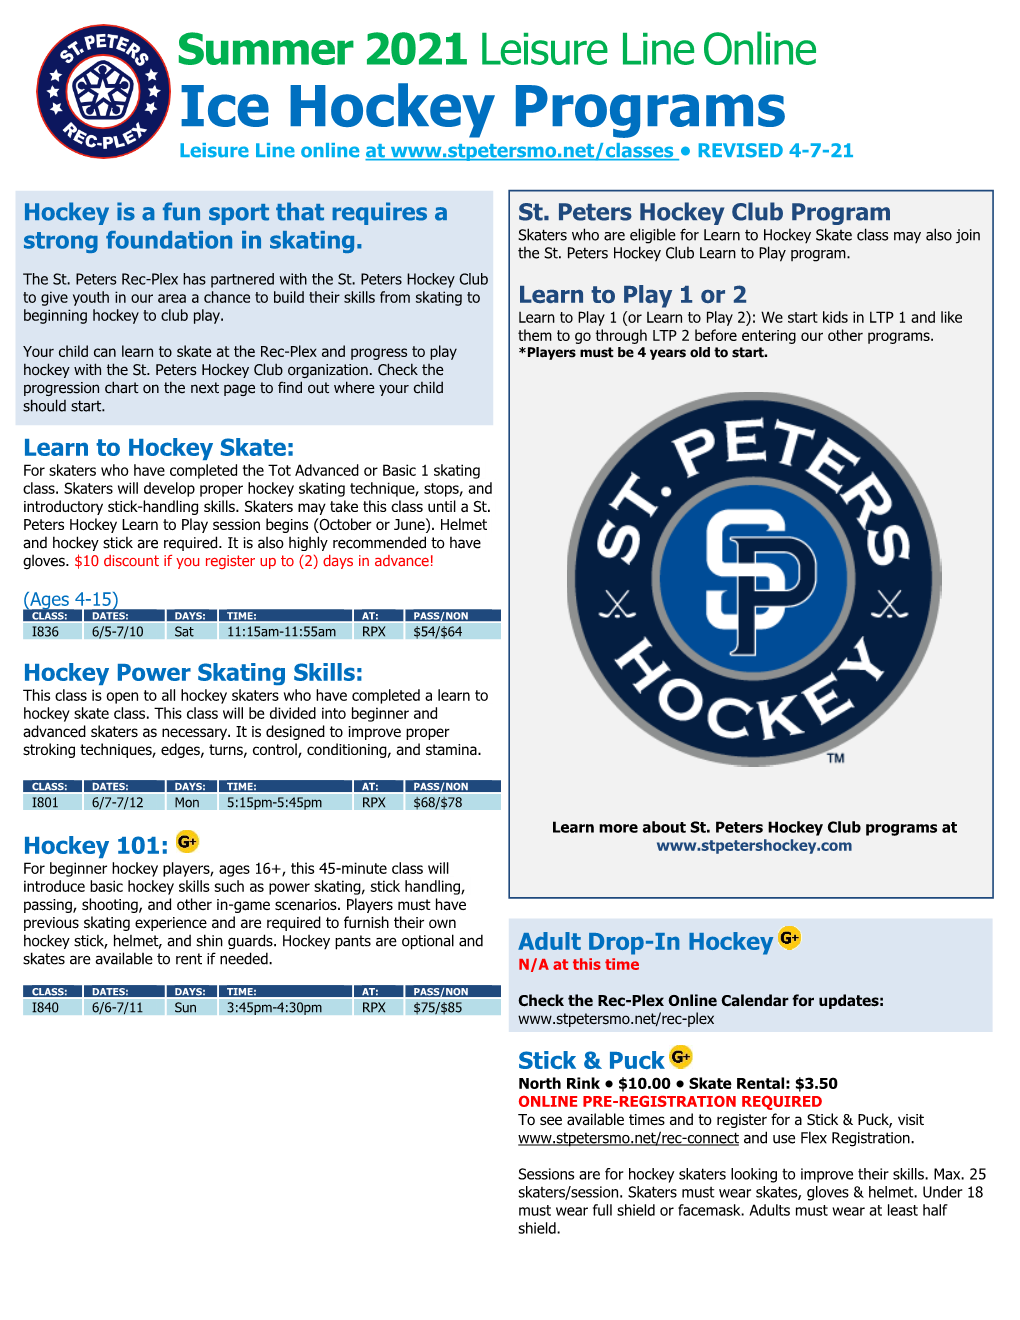 Ice Hockey Programs